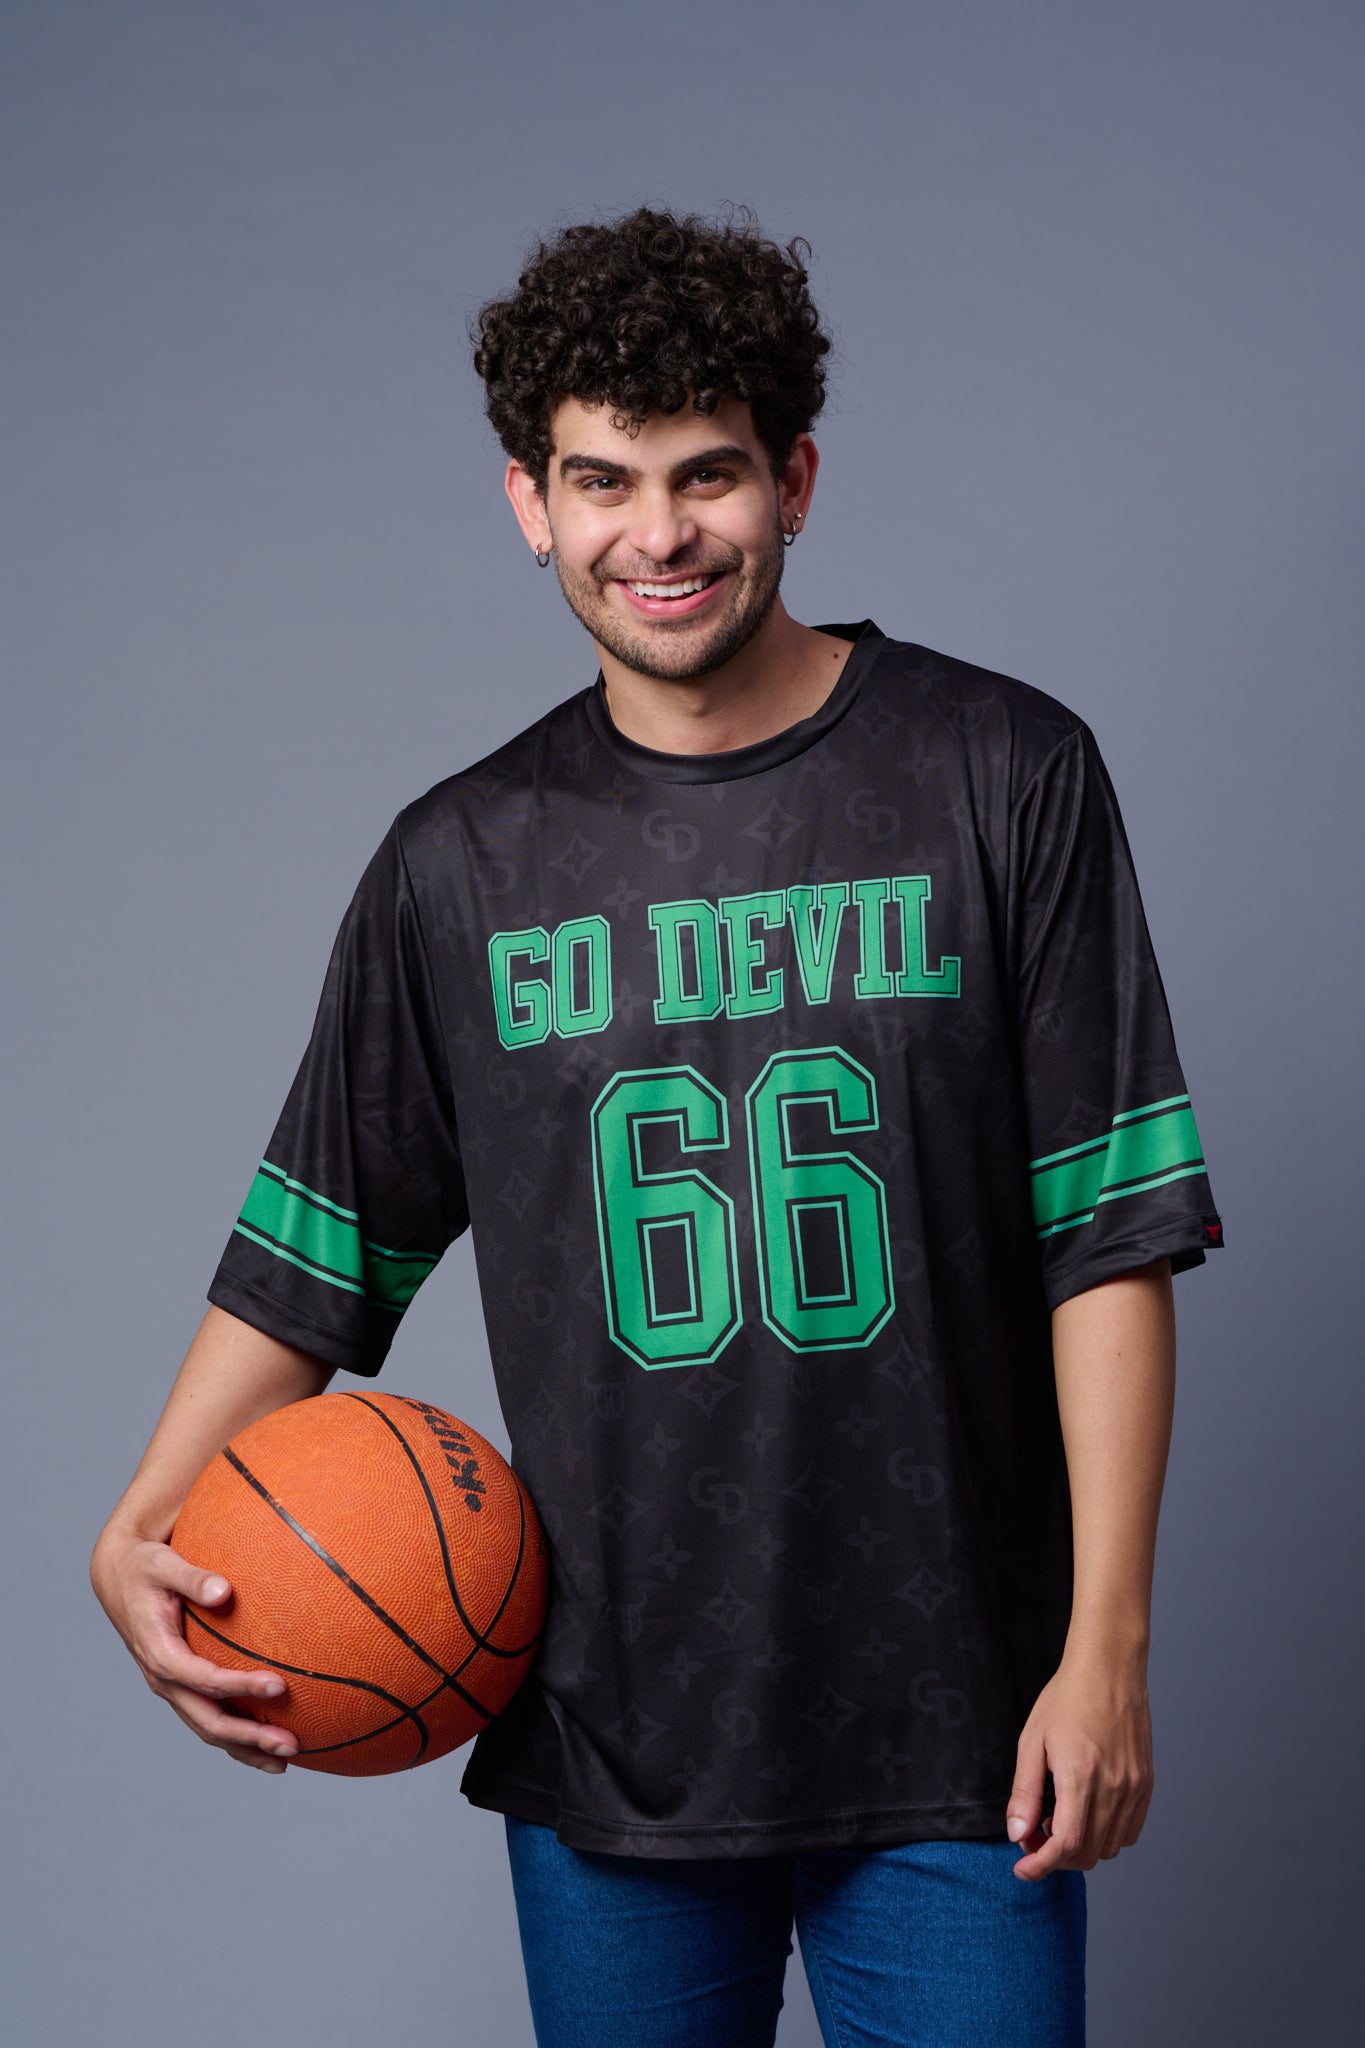 Go Devil 66 (In Green) Printed Black Jersey Oversized T-Shirt for Men